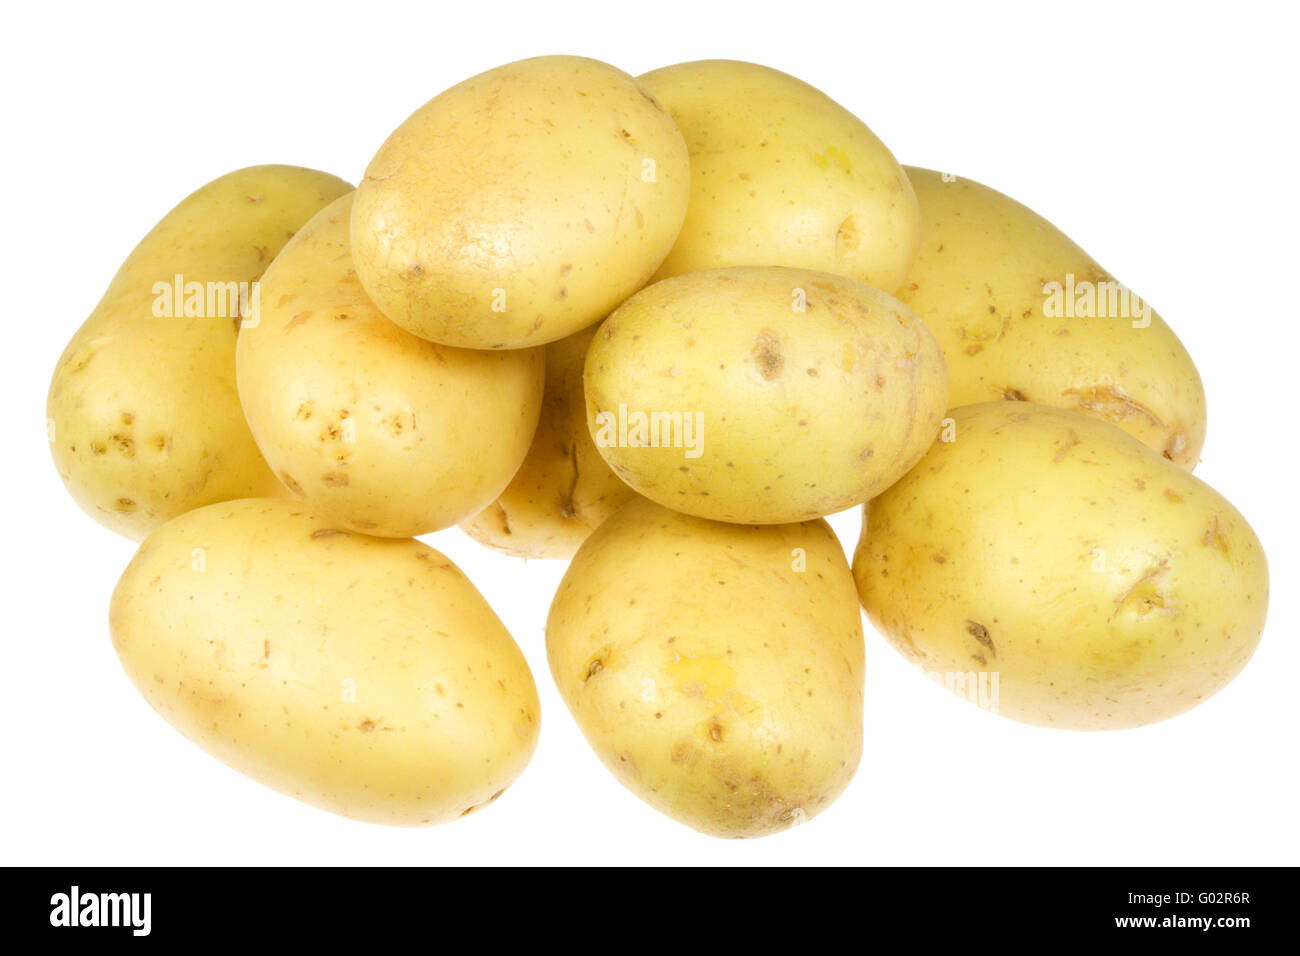 Potatoes on white. Stock Photo